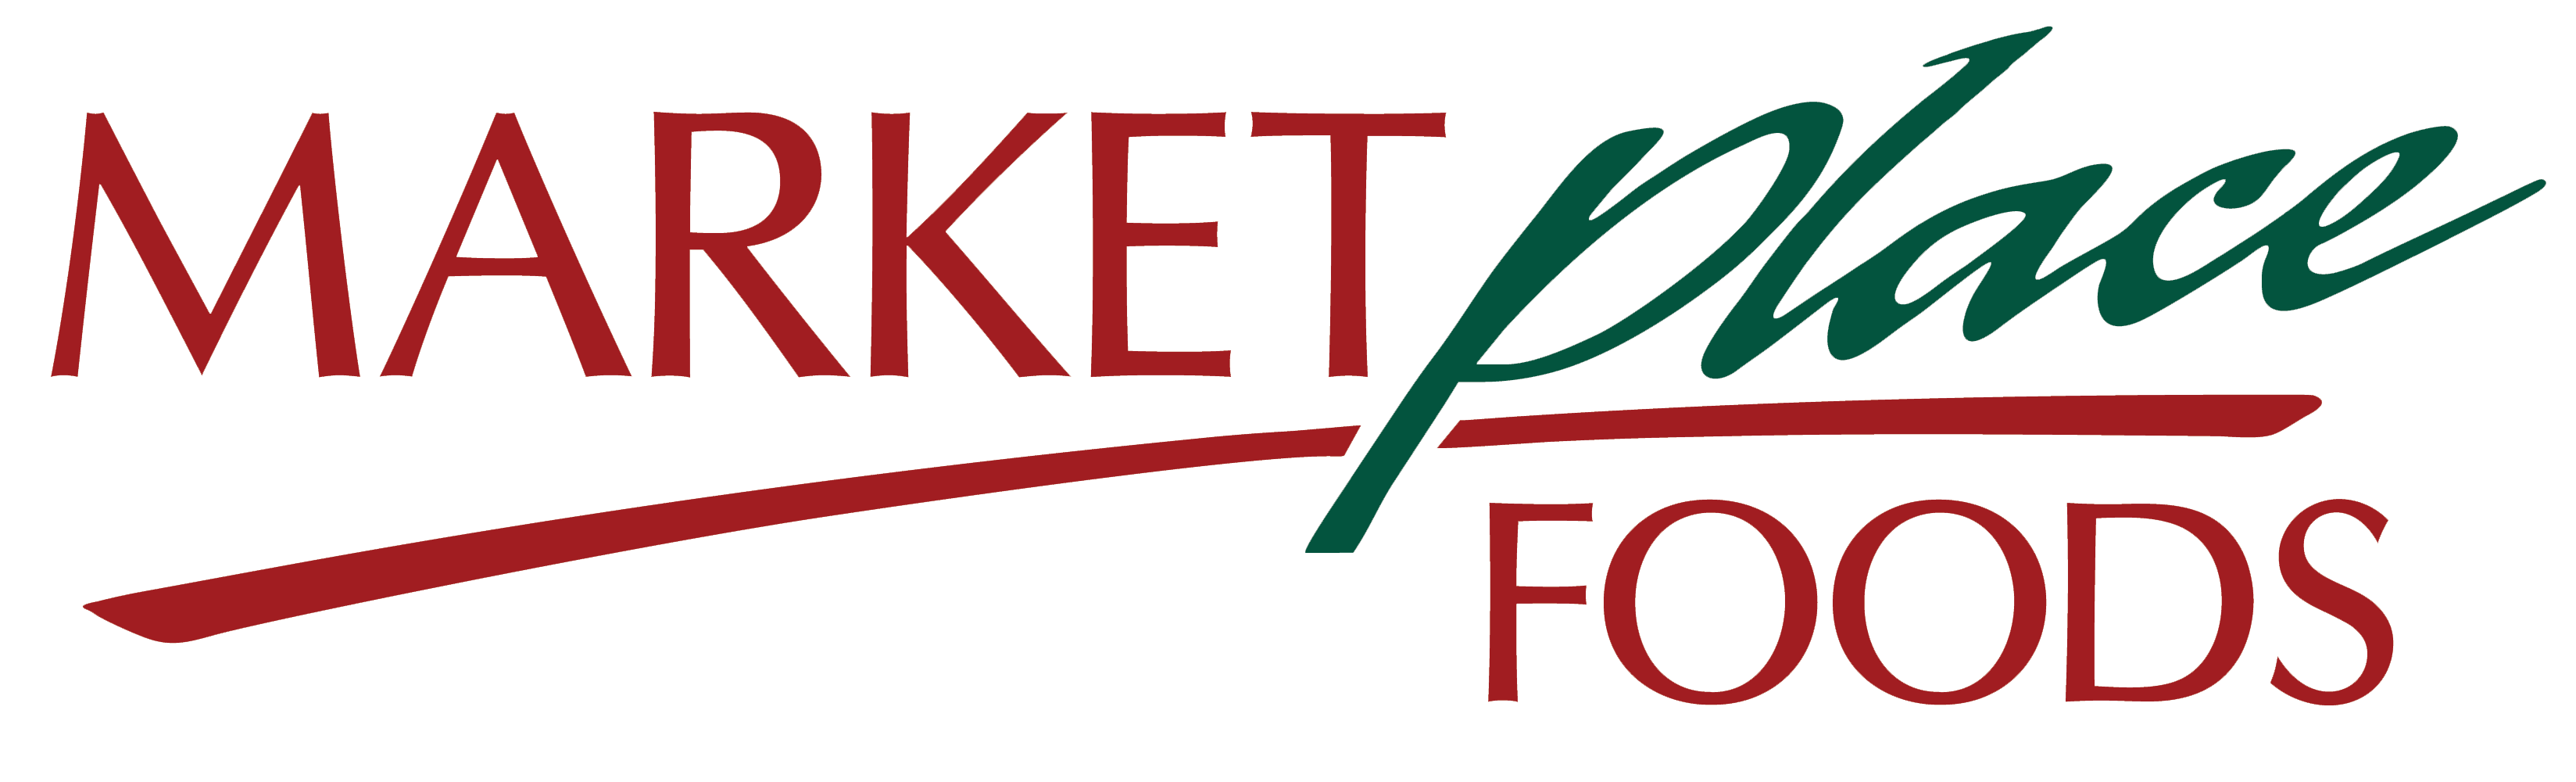 Marketplace Foods logo